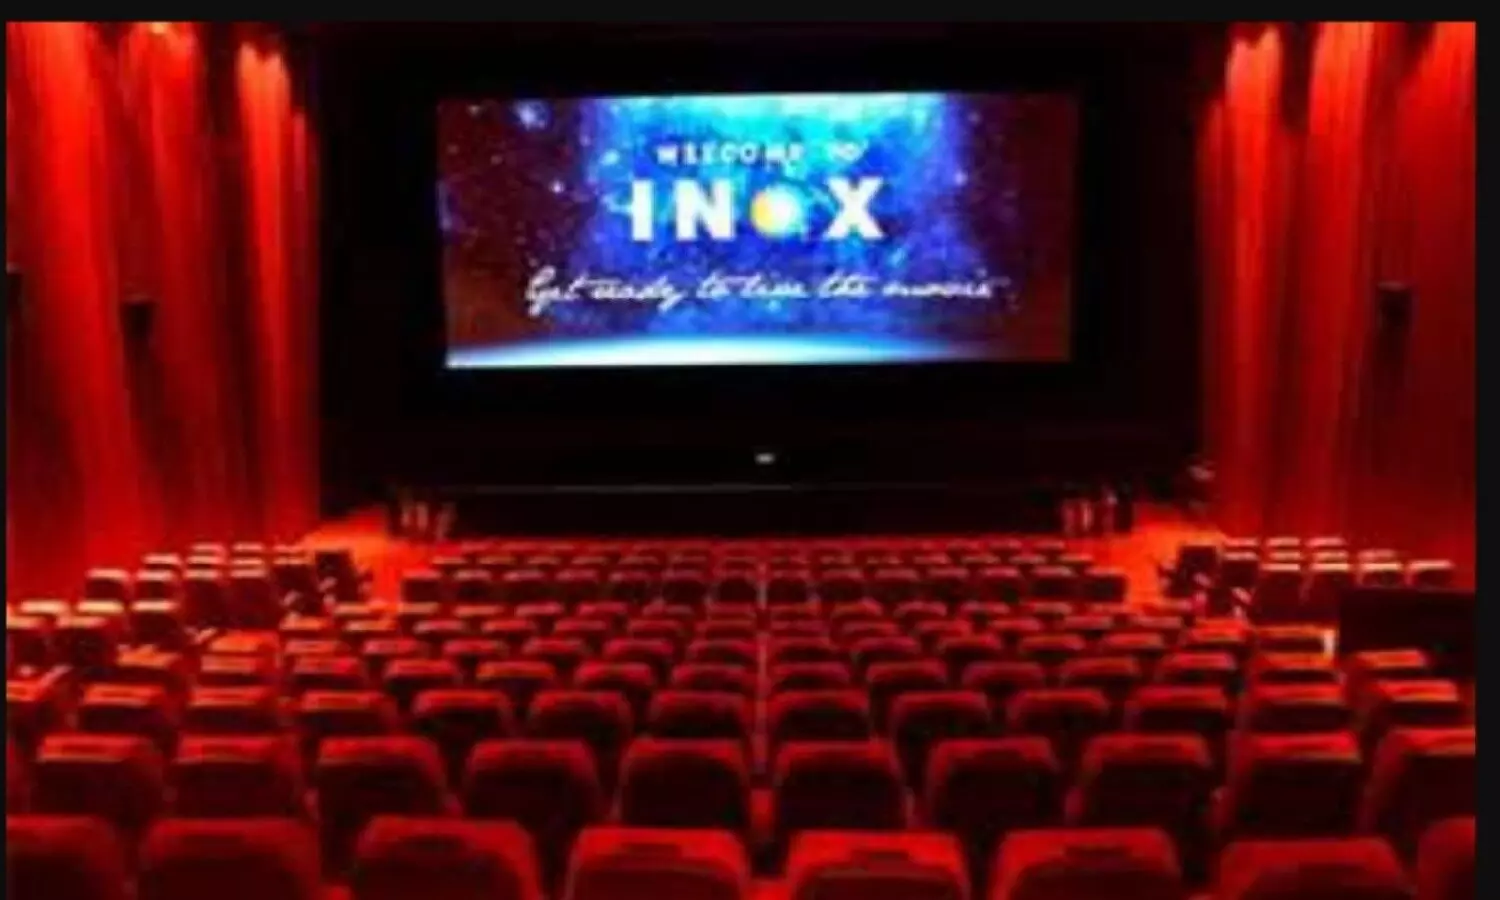 Free Movie Tickets : फ्री में देखिये मूवी, वो भी मल्टीप्लेक्स में, अब INOX पर जल्द बुक करिए टिकट्स